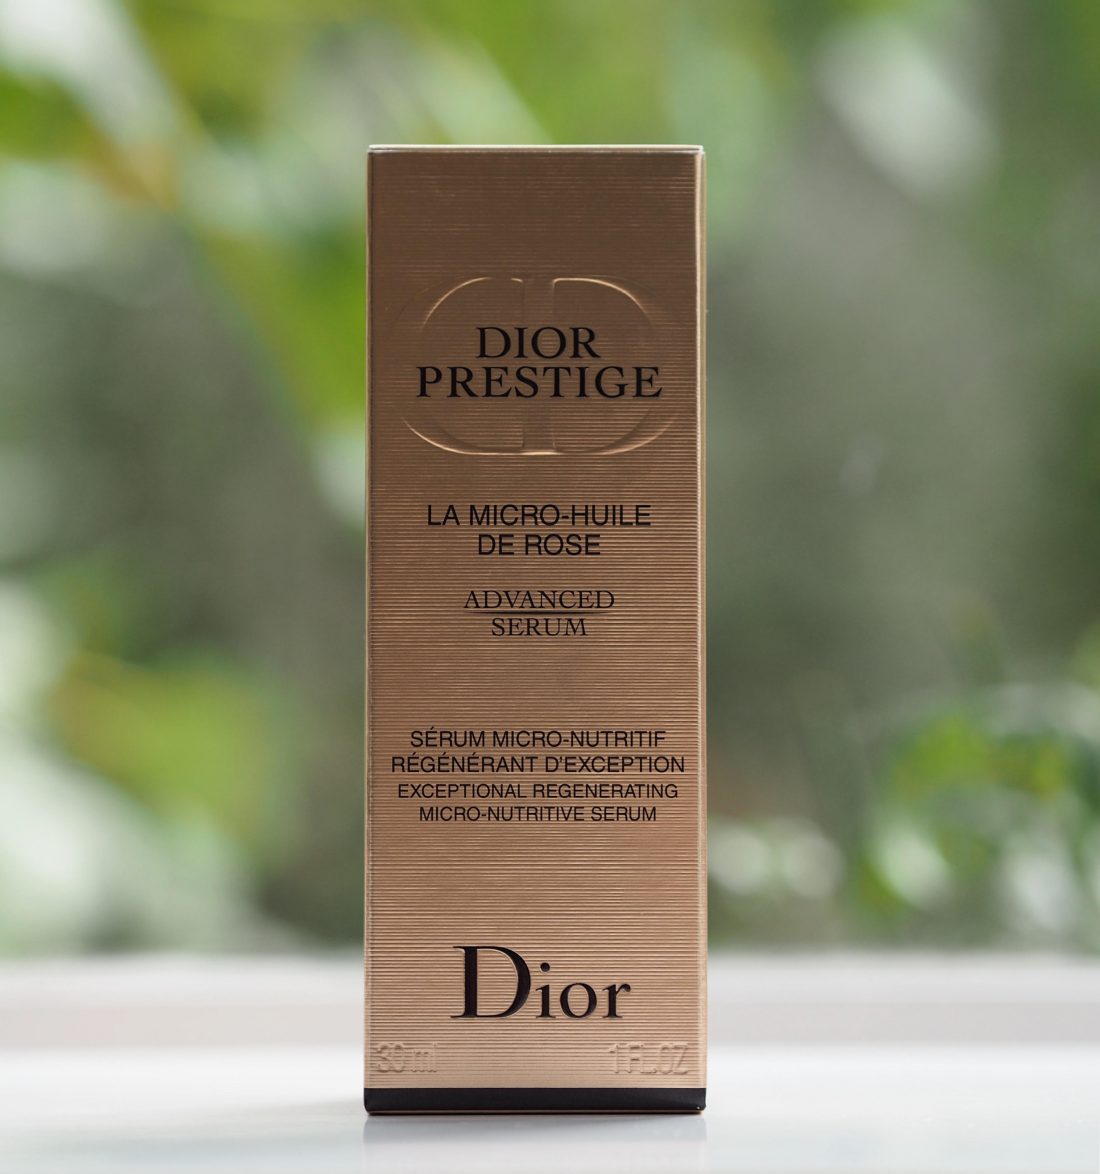 Dior Prestige La Micro Huile de Rose Advanced Serum 45ml 015oz New In Box   eBay